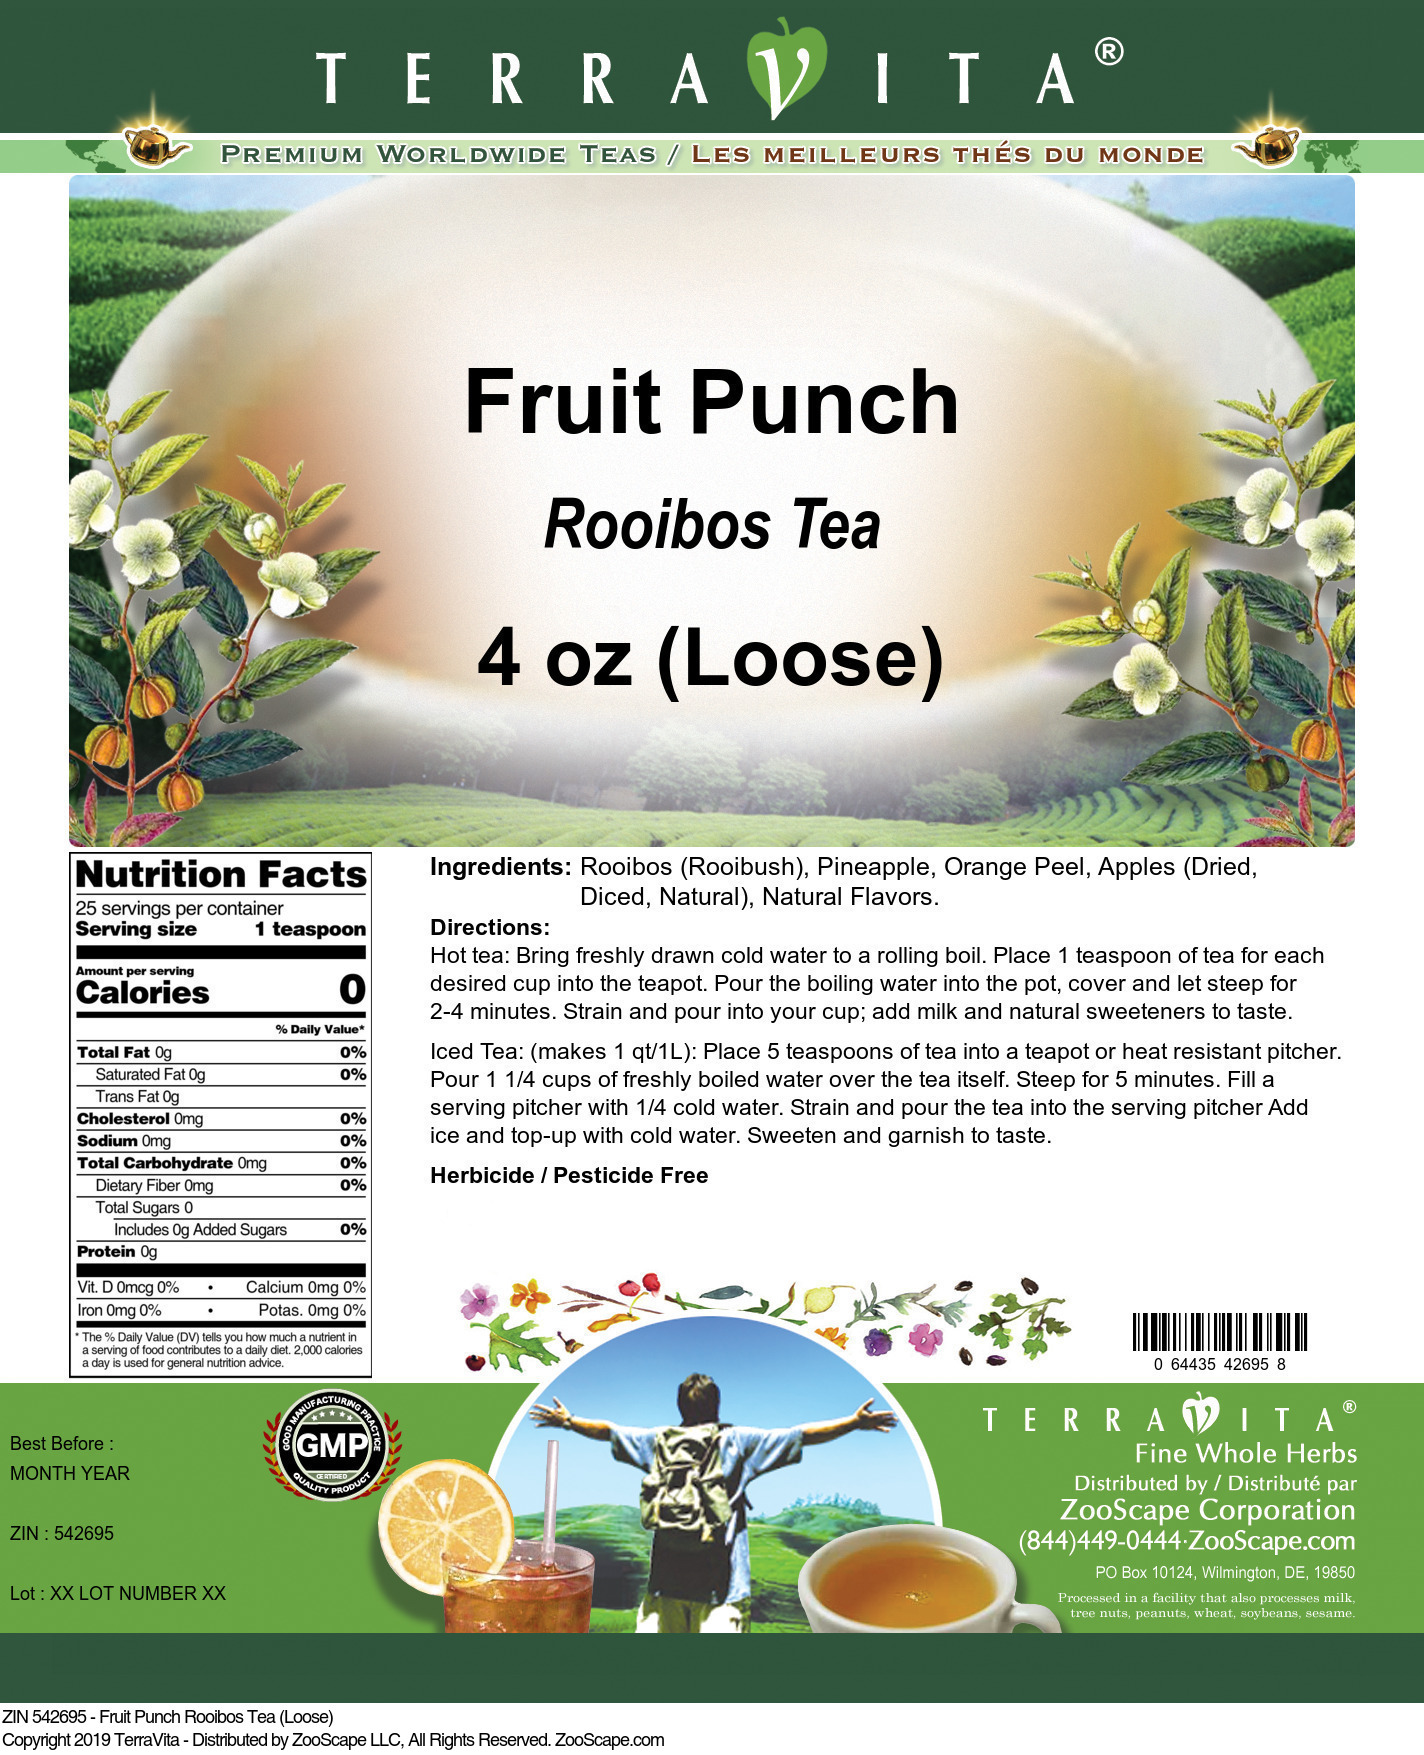 Fruit Punch Rooibos Tea (Loose) - Label